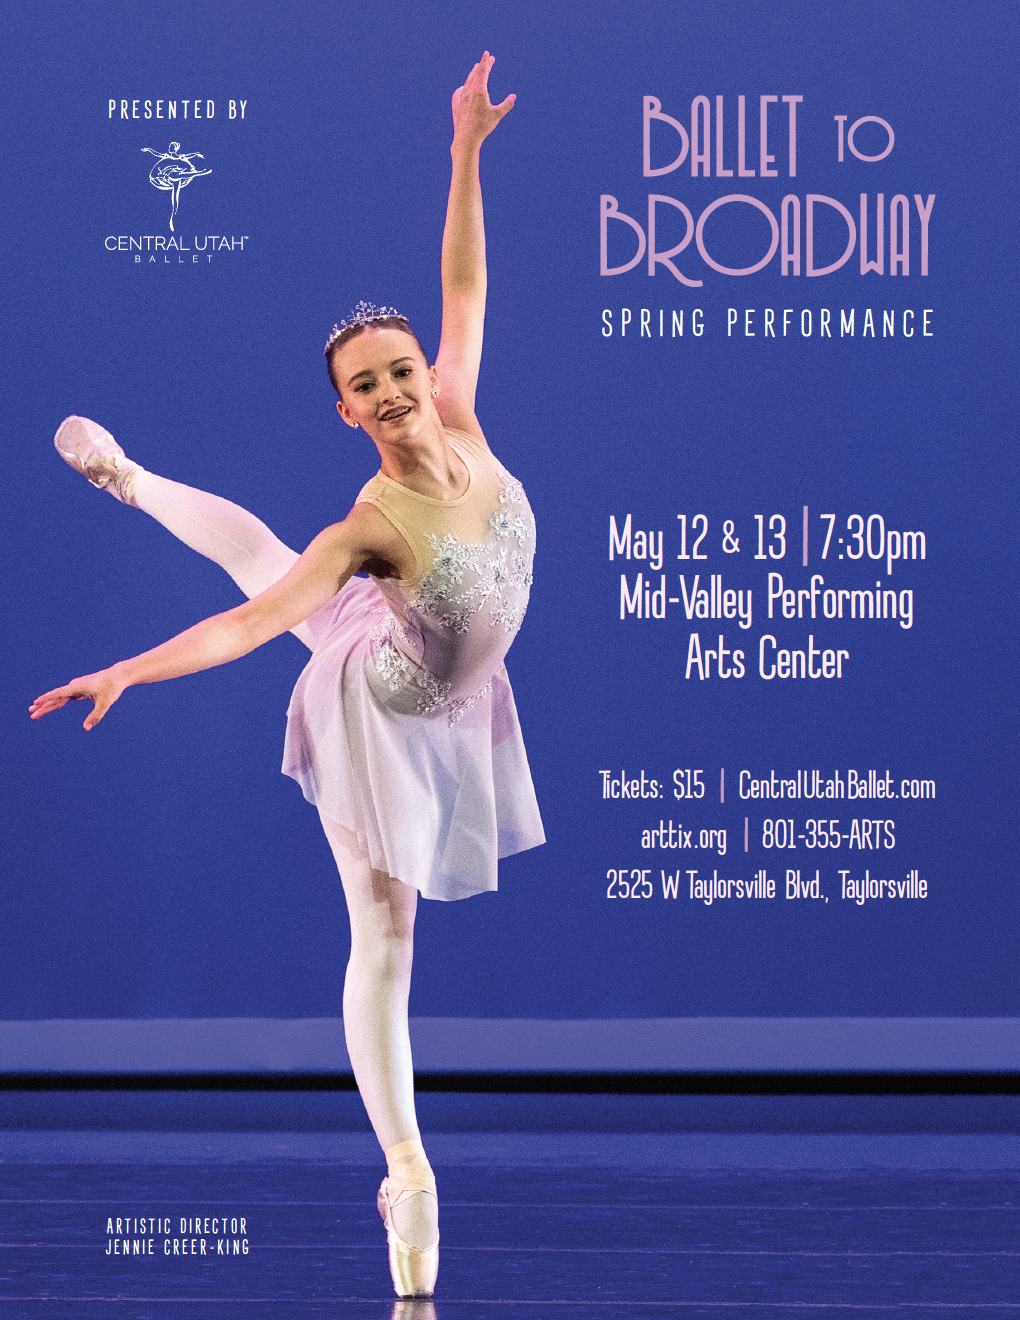 Back to Broadway Ballet Performance Central Utah Ballet